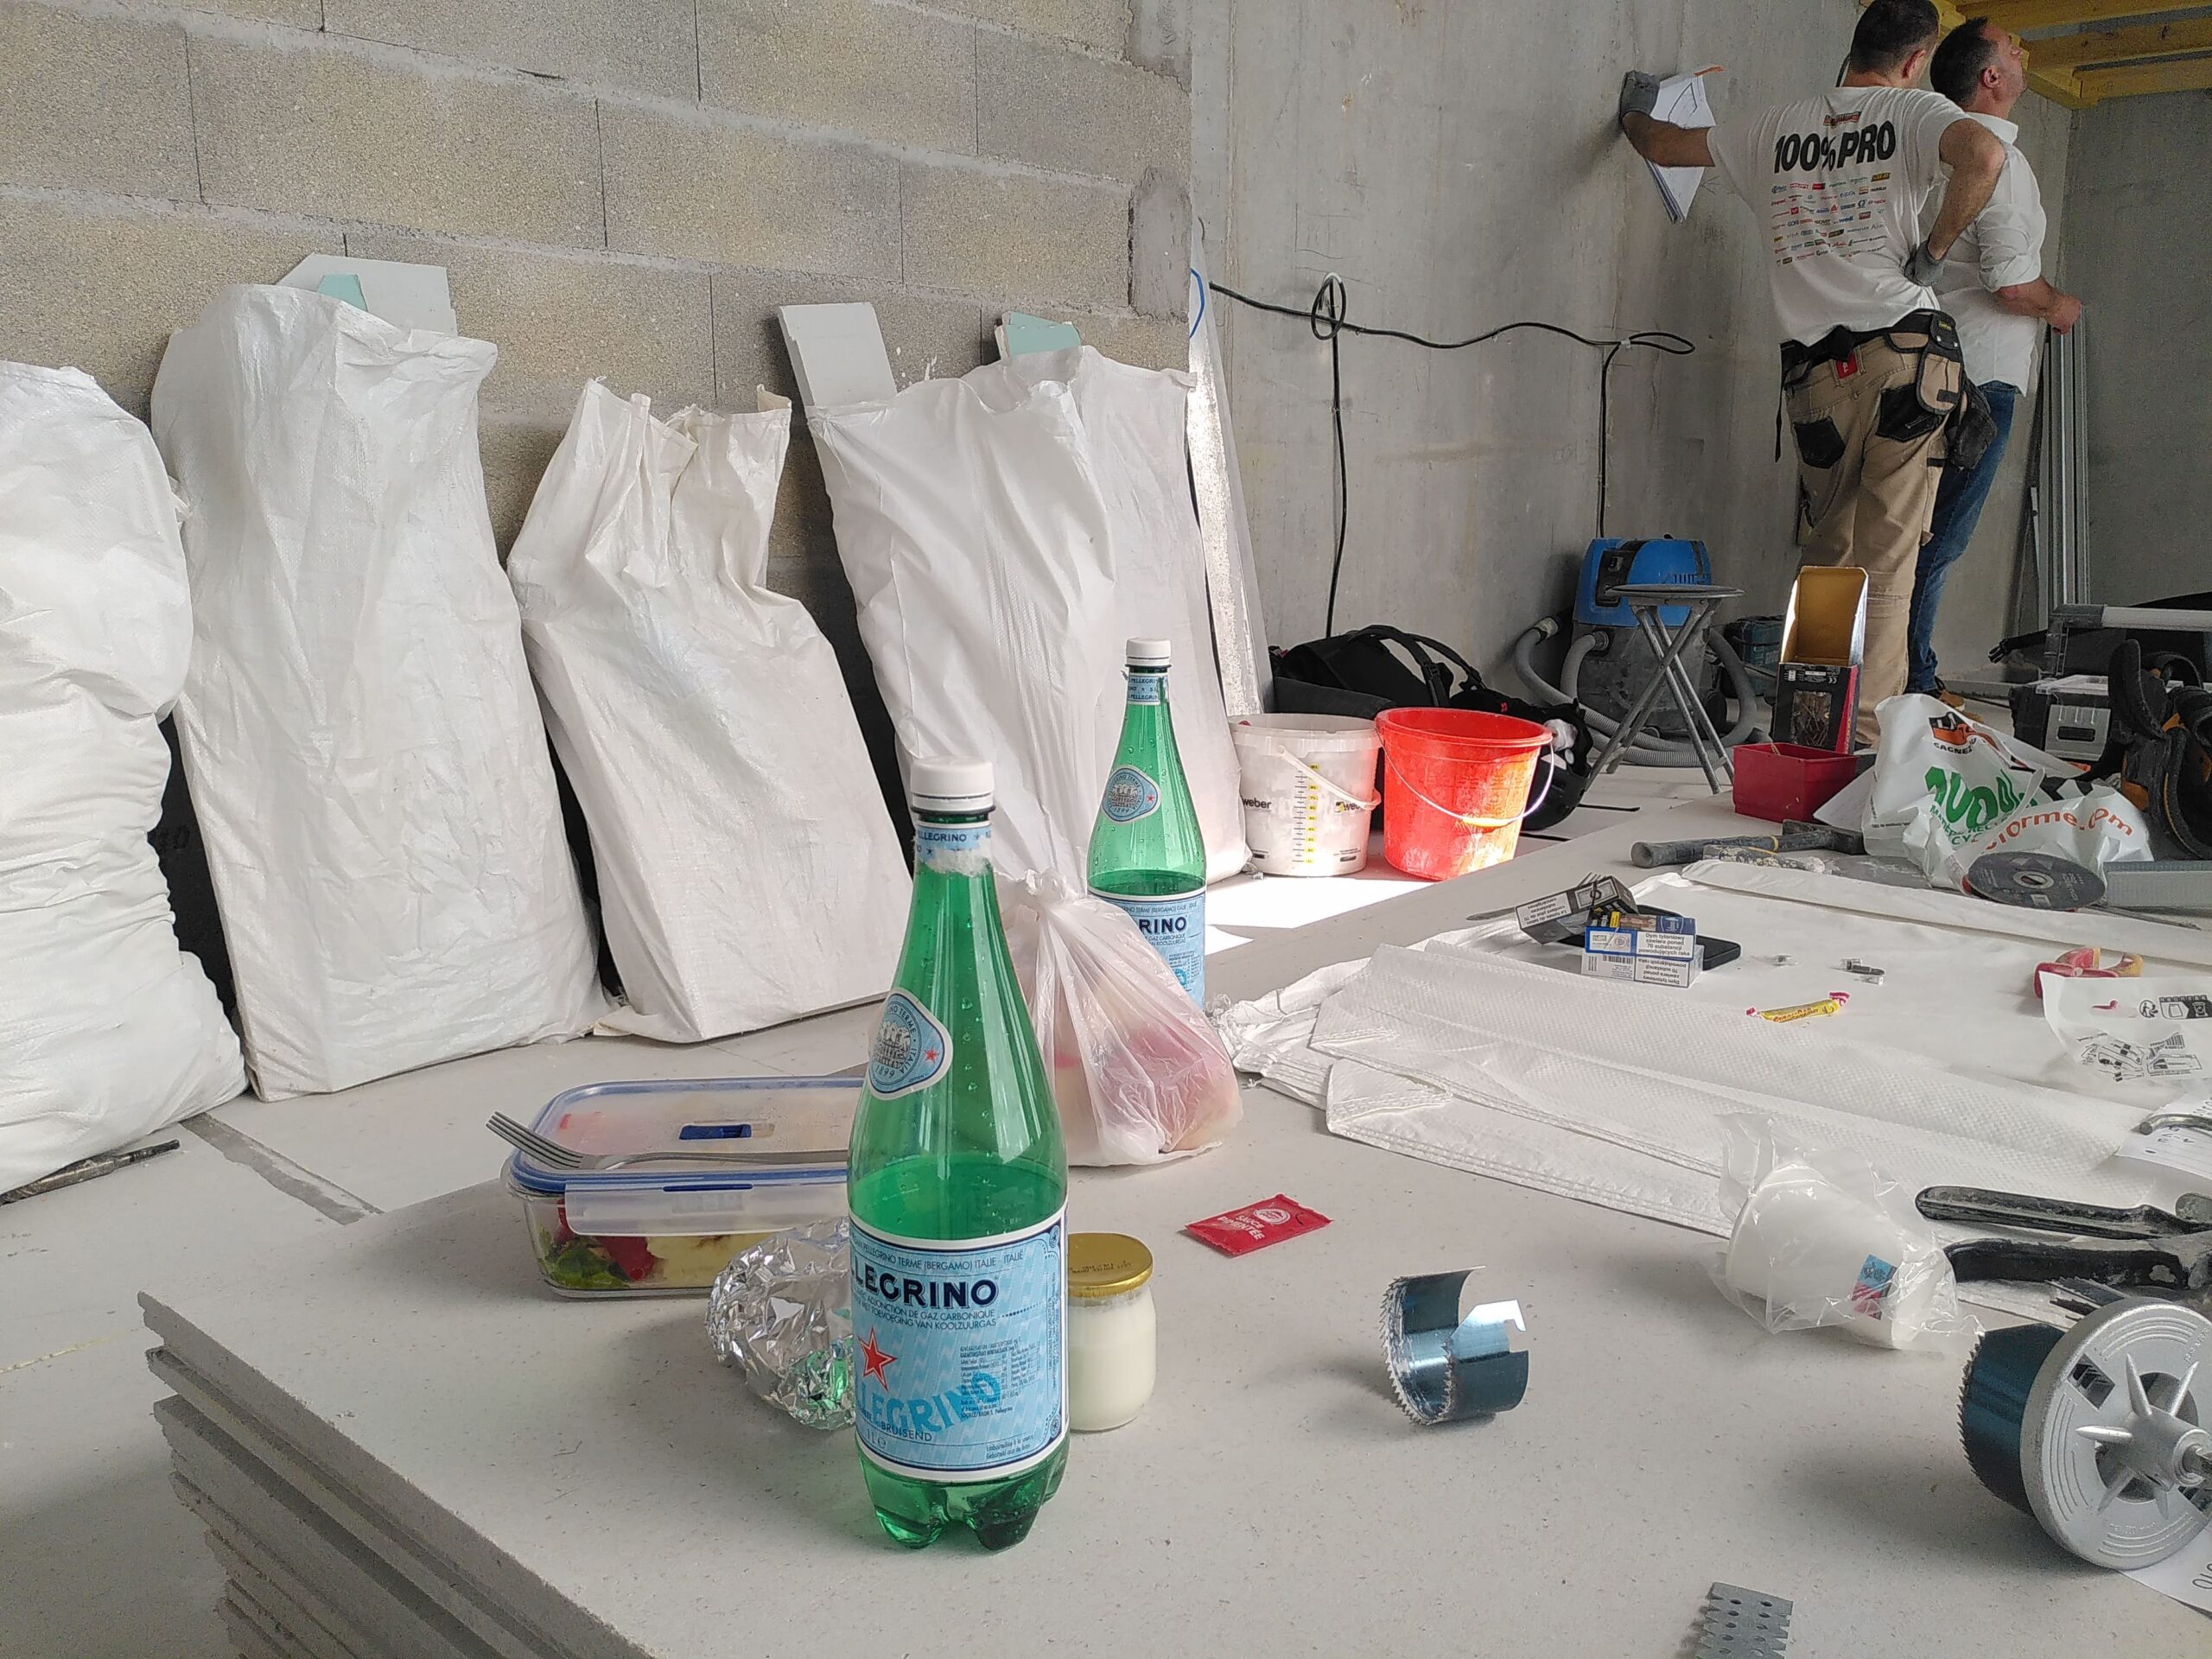 Dans l'atelier d'auto-réparation vélo de Paris 10 Paillettes et Cambouis, des sacs sont entreprosés contre un mur de béton brut, des ouvriers discutent, au premier plan on voit des bouteilles en plastique.